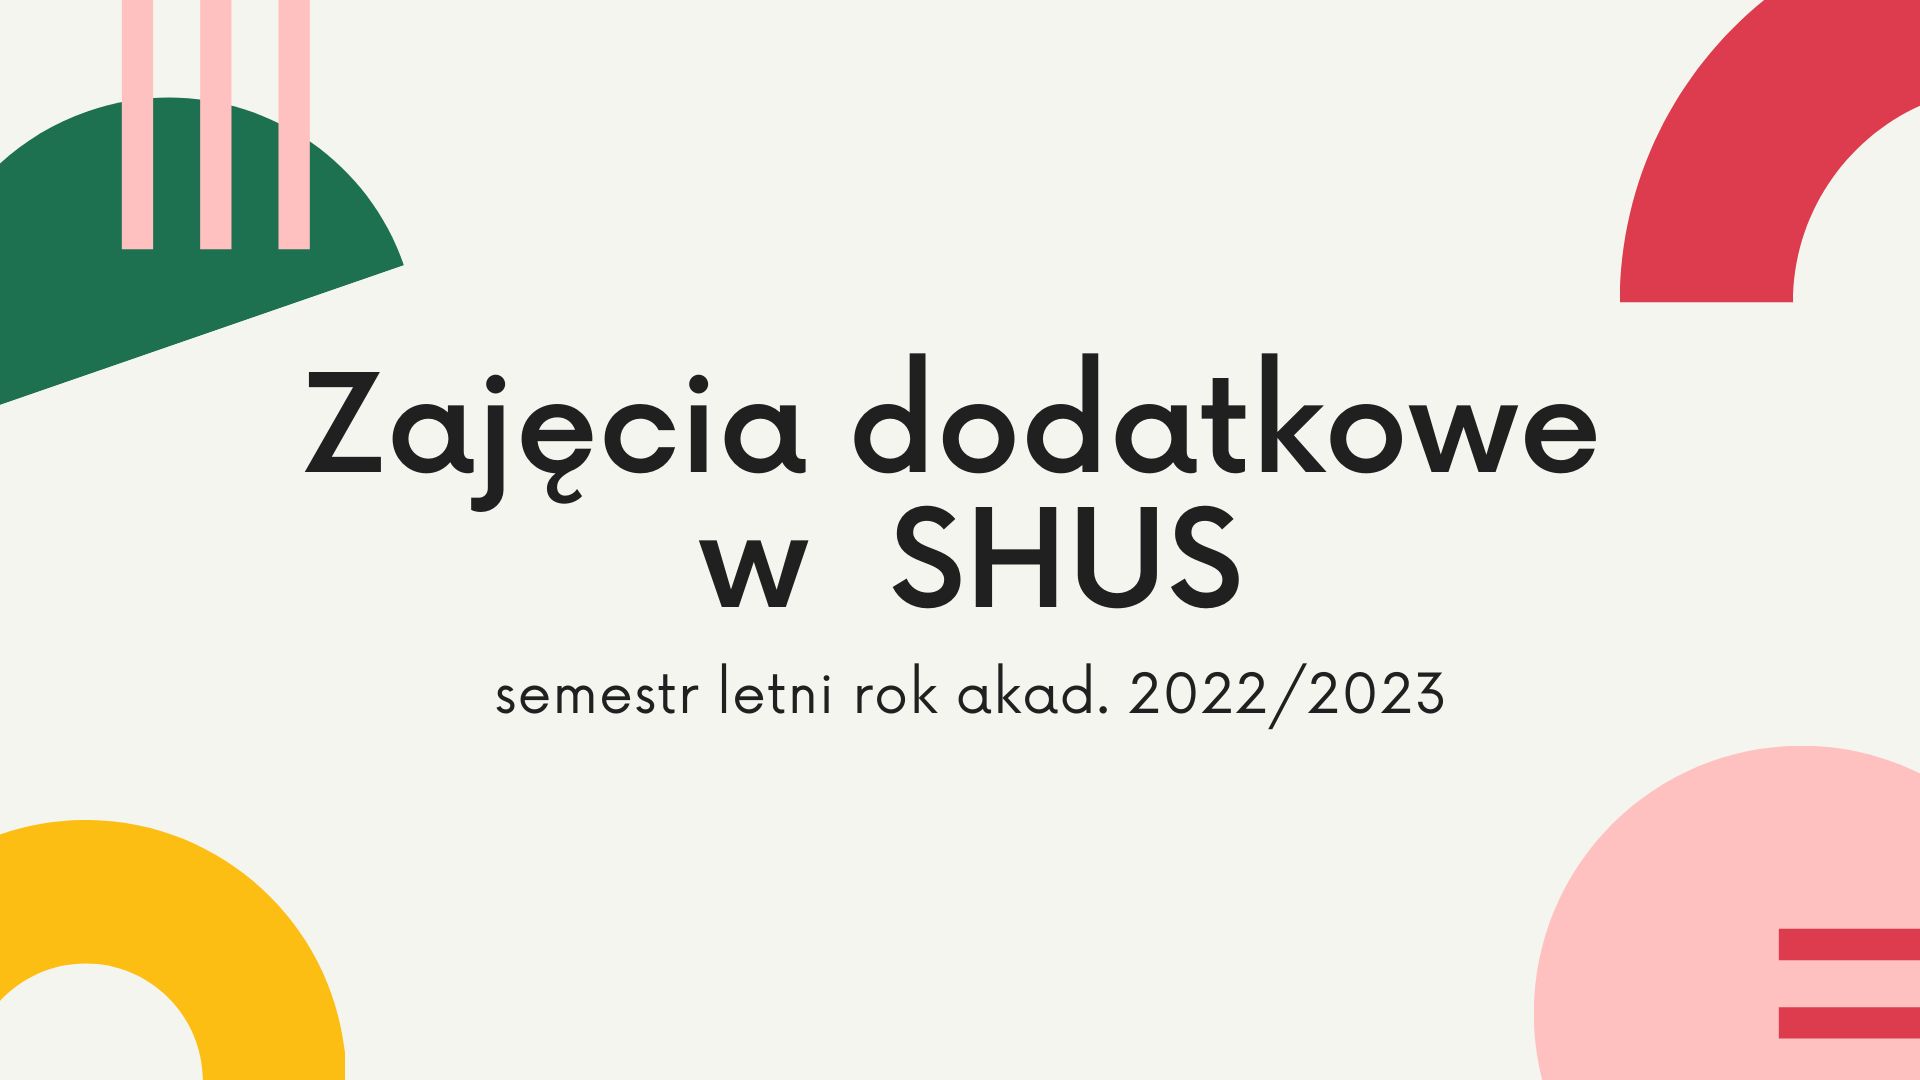 Zajęcia dodatkowe w  SHUS semestr letni rok akad. 2022/2023